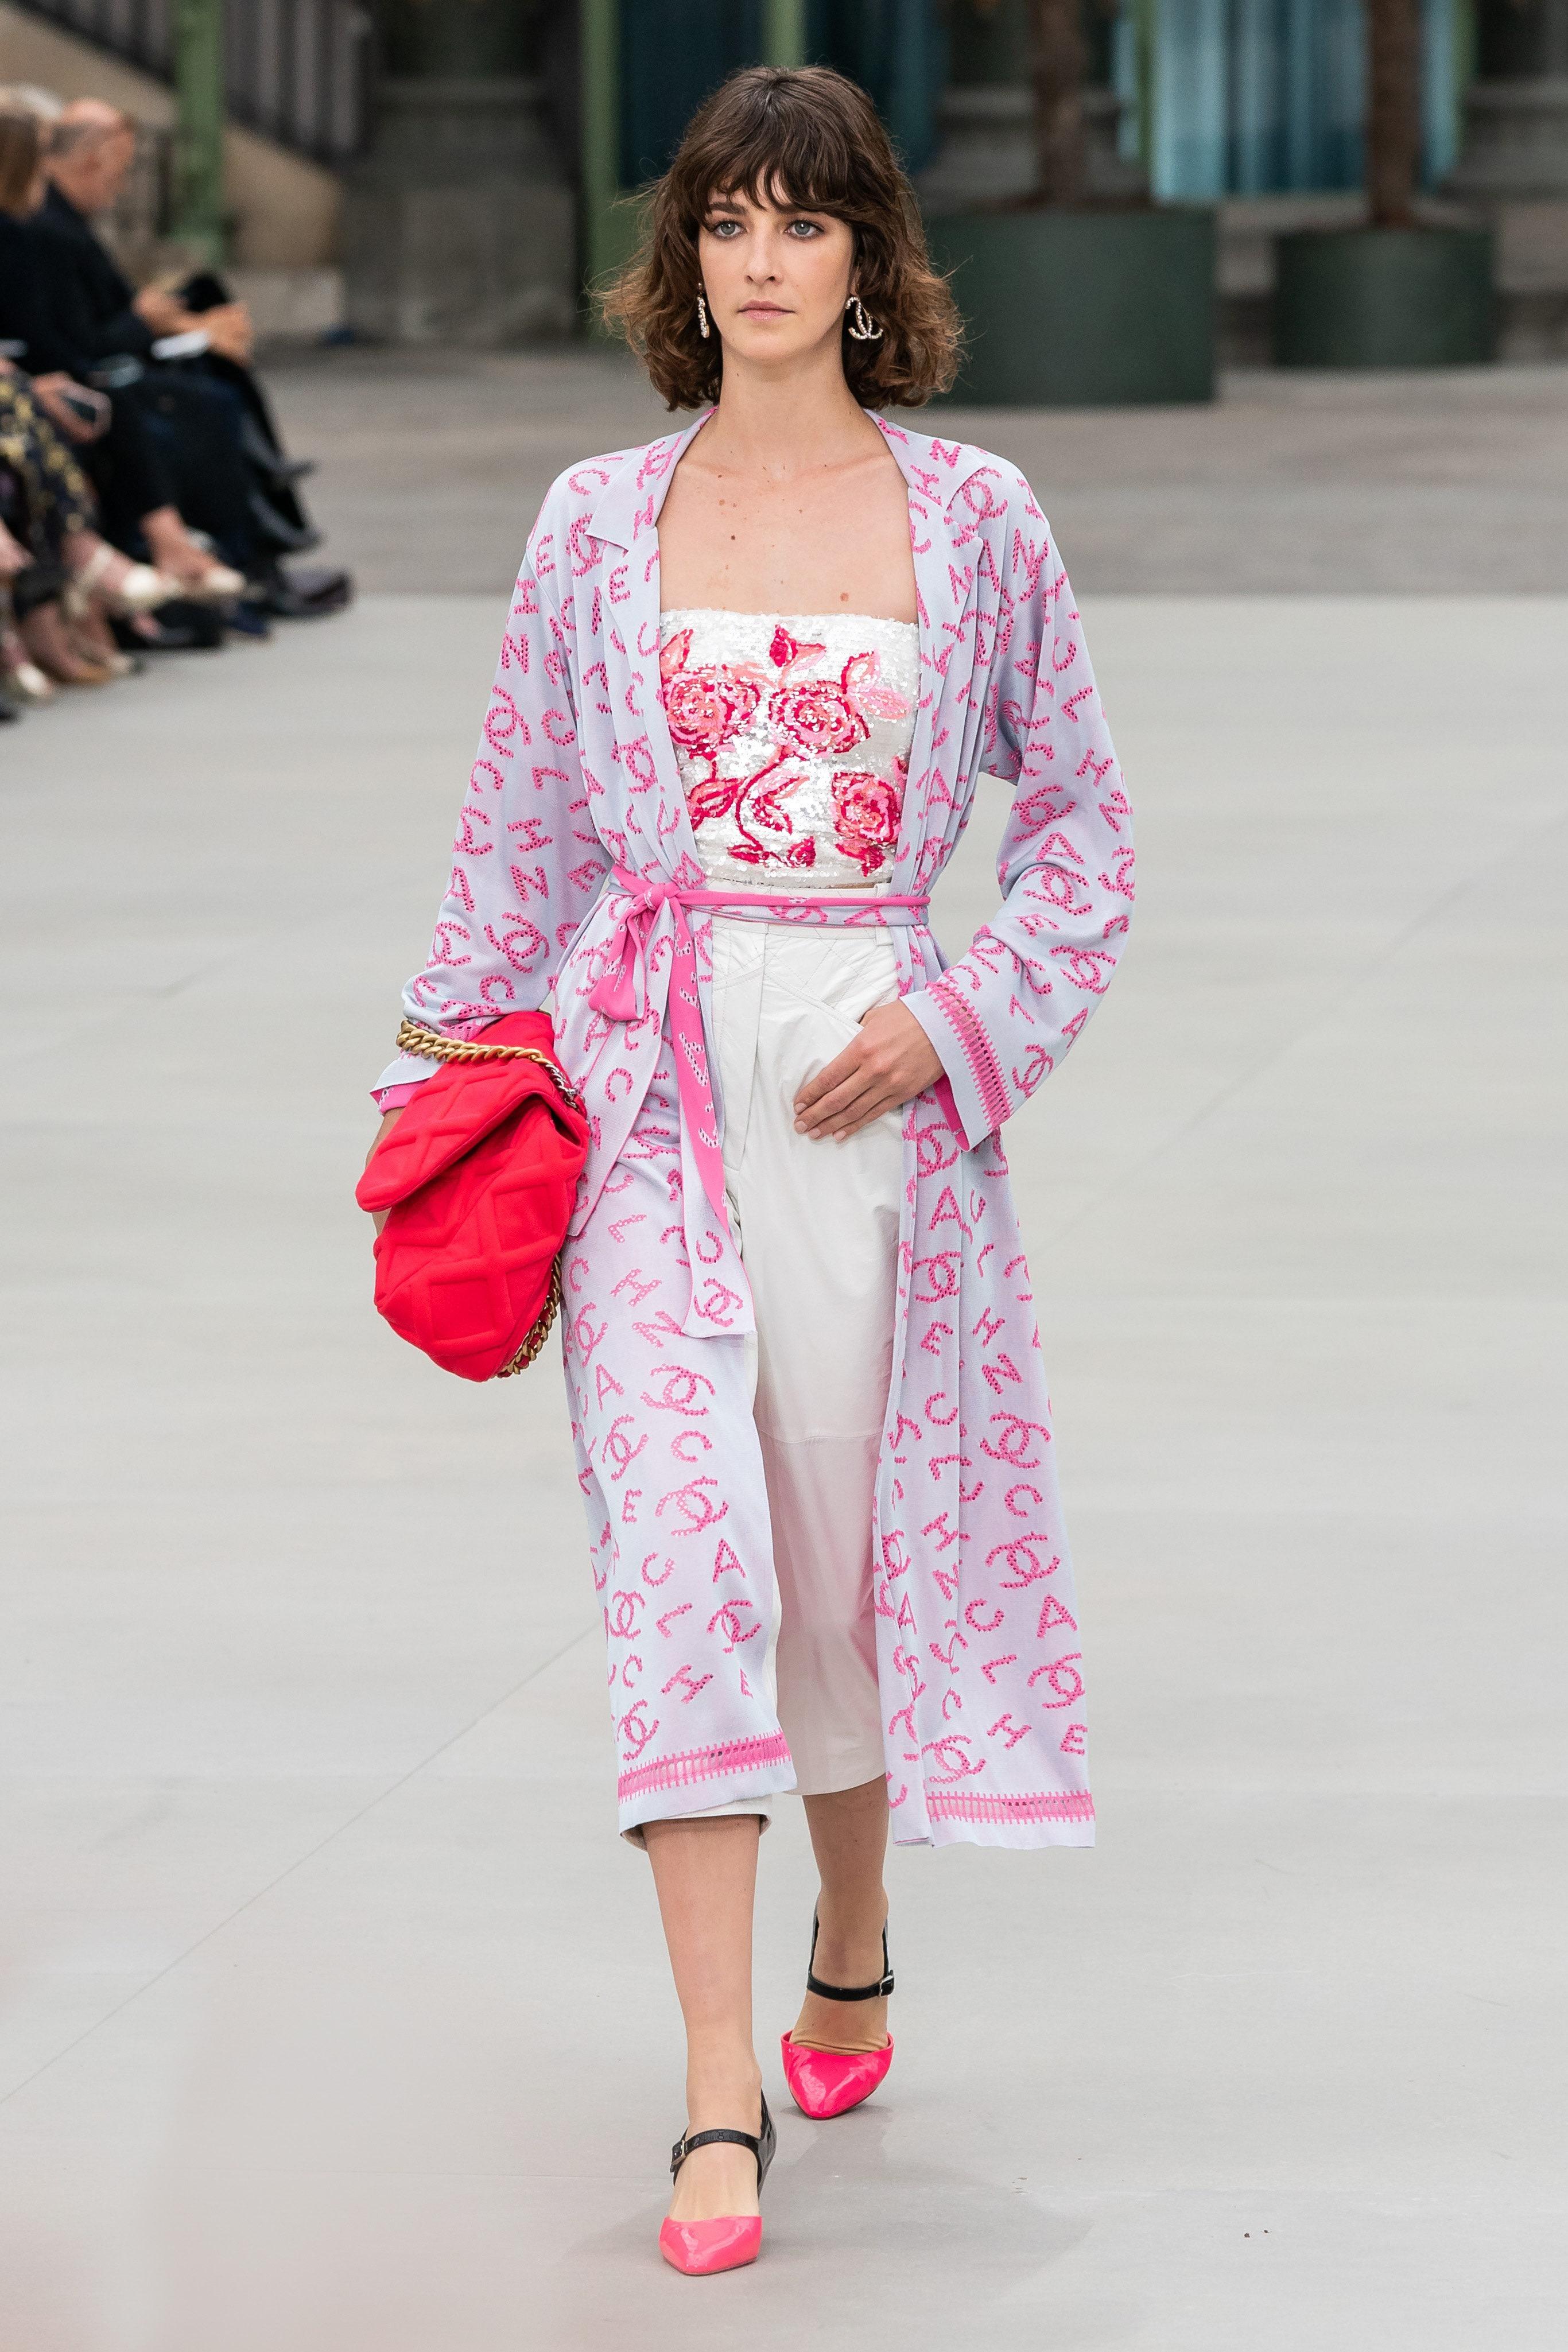 Nouveau superbe peignoir / kimono ceinturé CC Logo de Chanel de la Collection Runway of 2020 Cruise COCO Express, 20C
Taille 38 FR. Jamais porté, livré avec une pochette Chanel contenant des tricots de rechange.